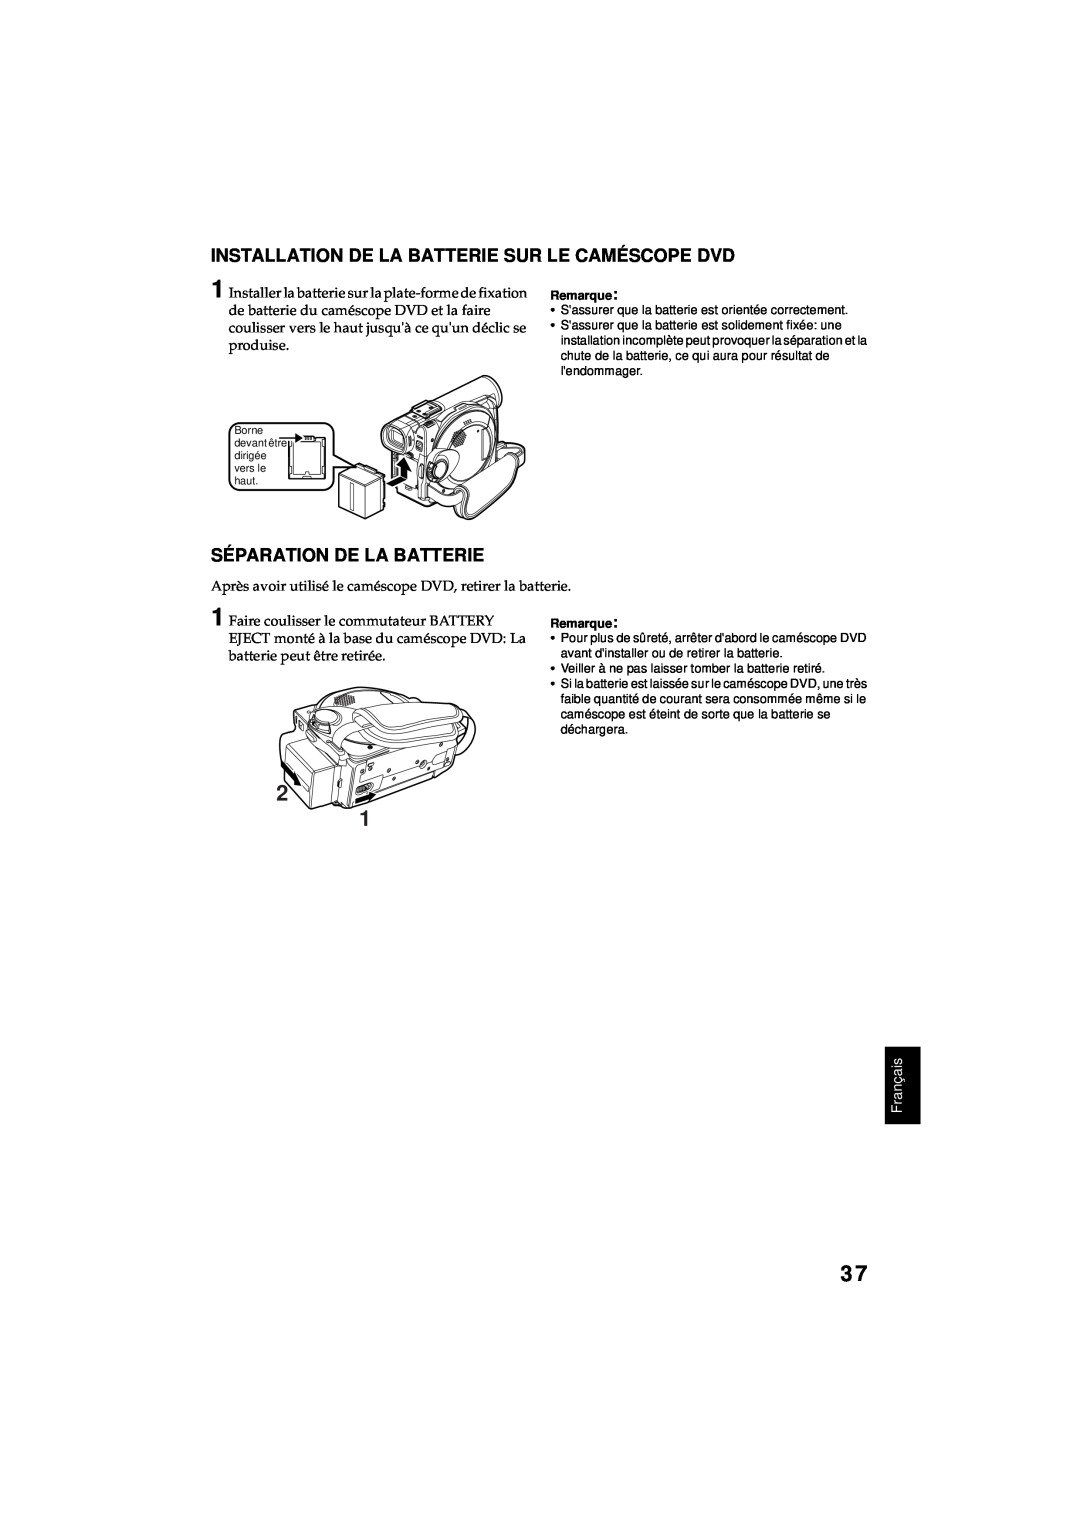 Hitachi DZ-MV380A manual Installation De La Batterie Sur Le Caméscope Dvd, Séparation De La Batterie, Français 